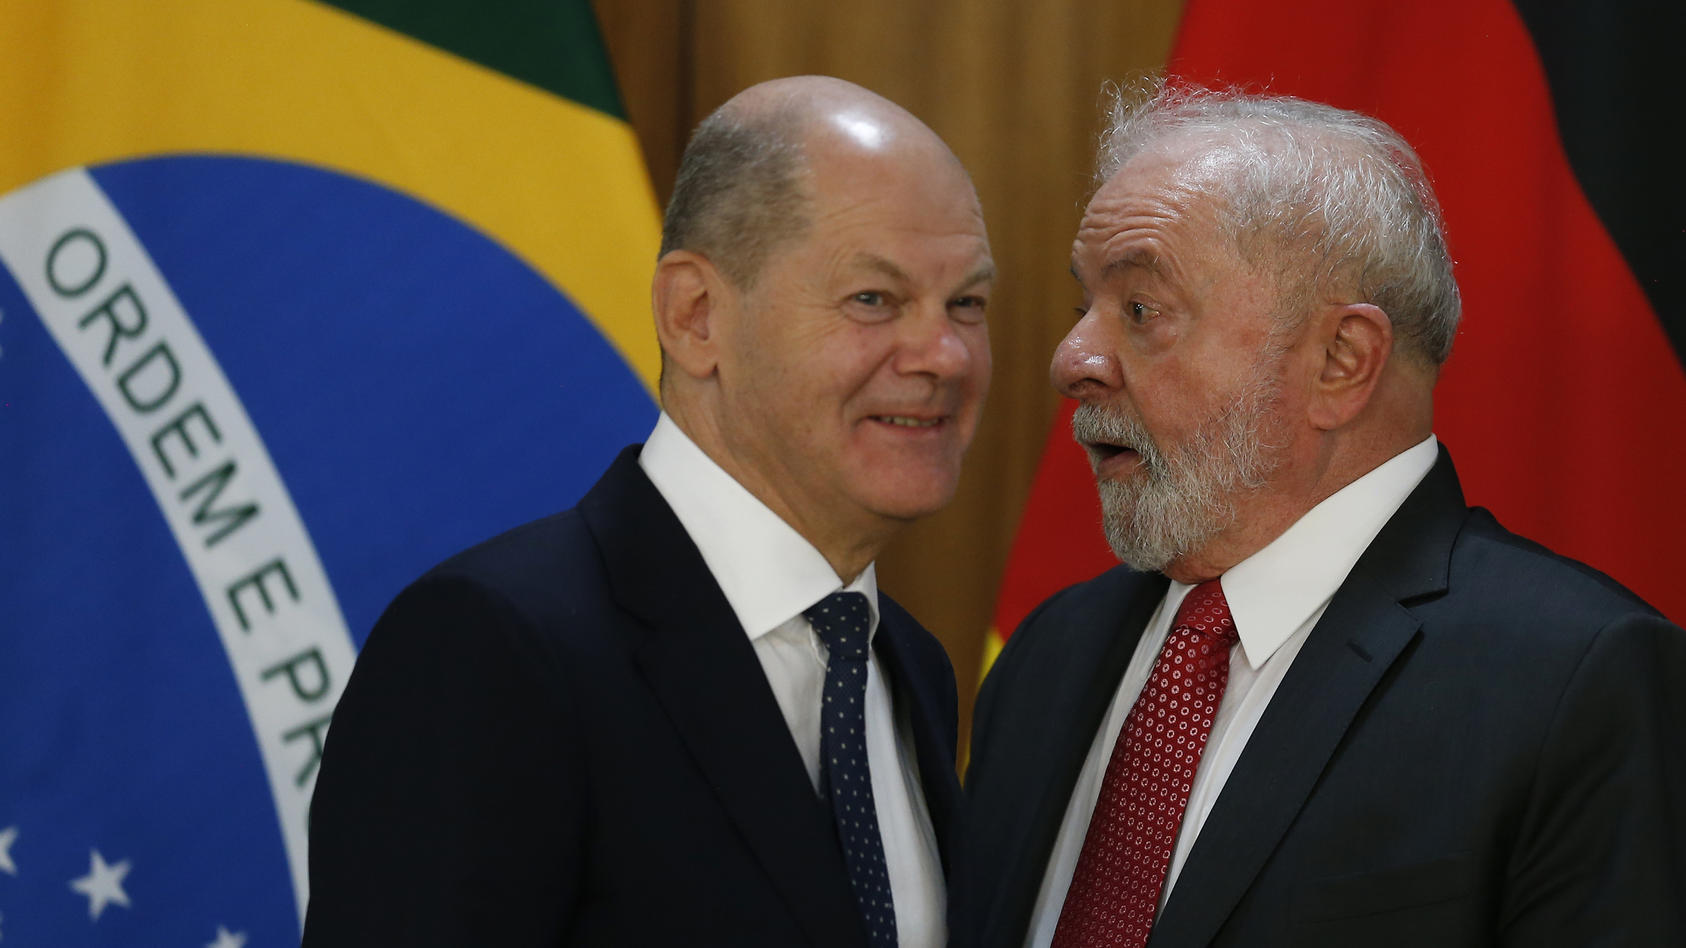 der-bundeskanzler-olaf-scholz-mit-dem-brasilianischen-prasidenten-lula-in-brasilia